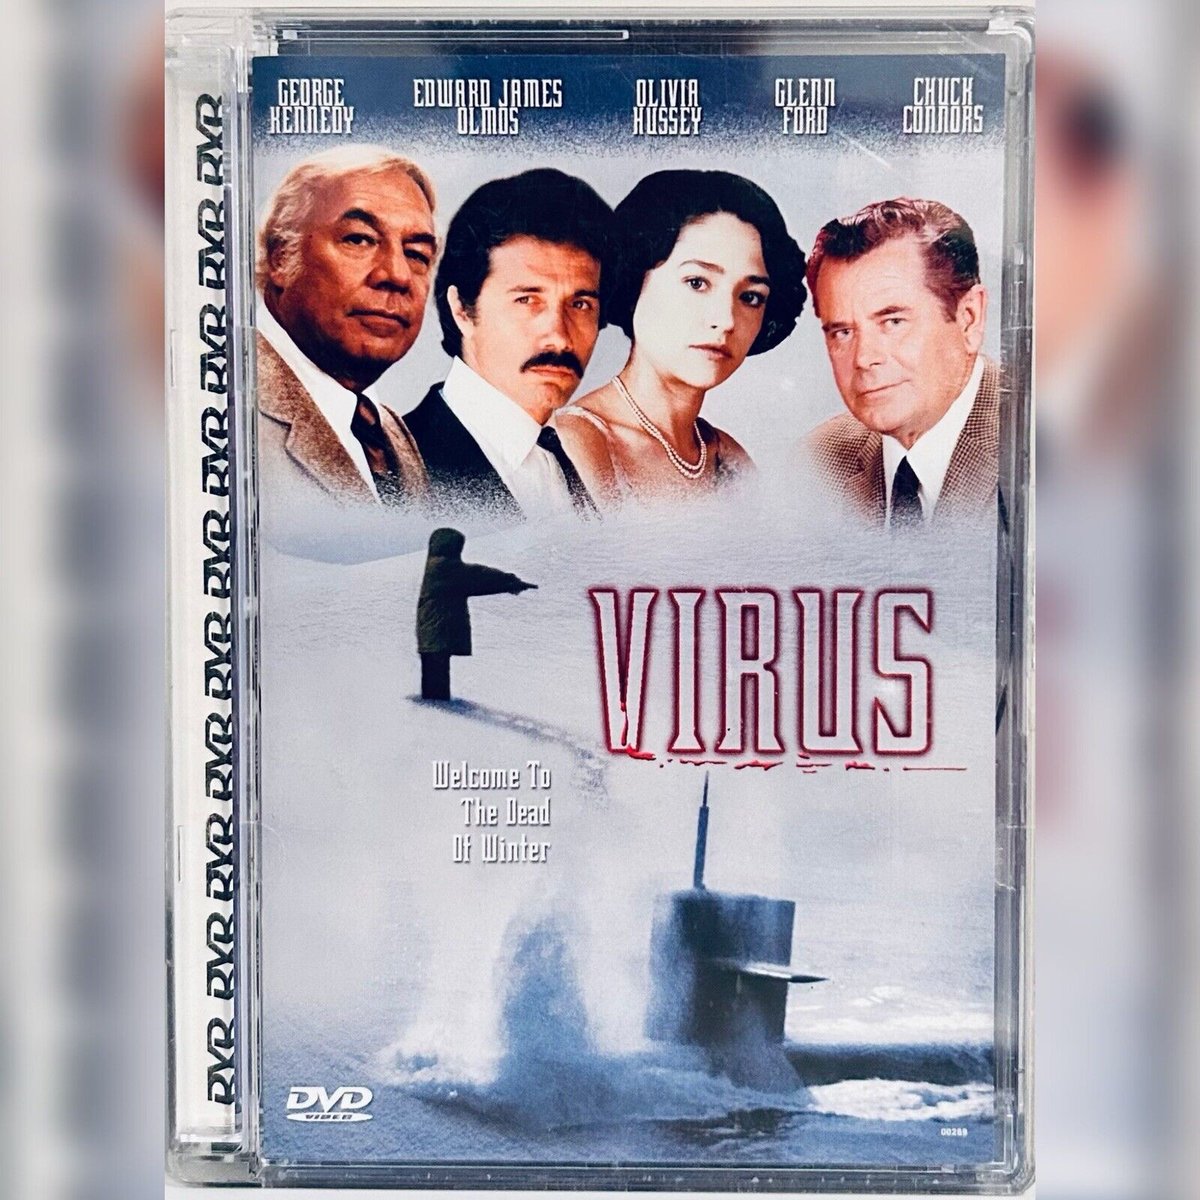 #NewArrival! Virus (DVD, 2007) Chuck Connors Edward James Olmos 1980, Sci-fi/Horror Rare OOP rareflicksplus.com/product-page/v… #Virus #Virus1980 #80s #ChuckConnors #EdwardJamesOlmos #Rare #OOP #HTF #DVD #DVDs #PhysicalMedia #Flashback #Horror #HorrorMovie #HorrorCommunity #DVD #DVDs